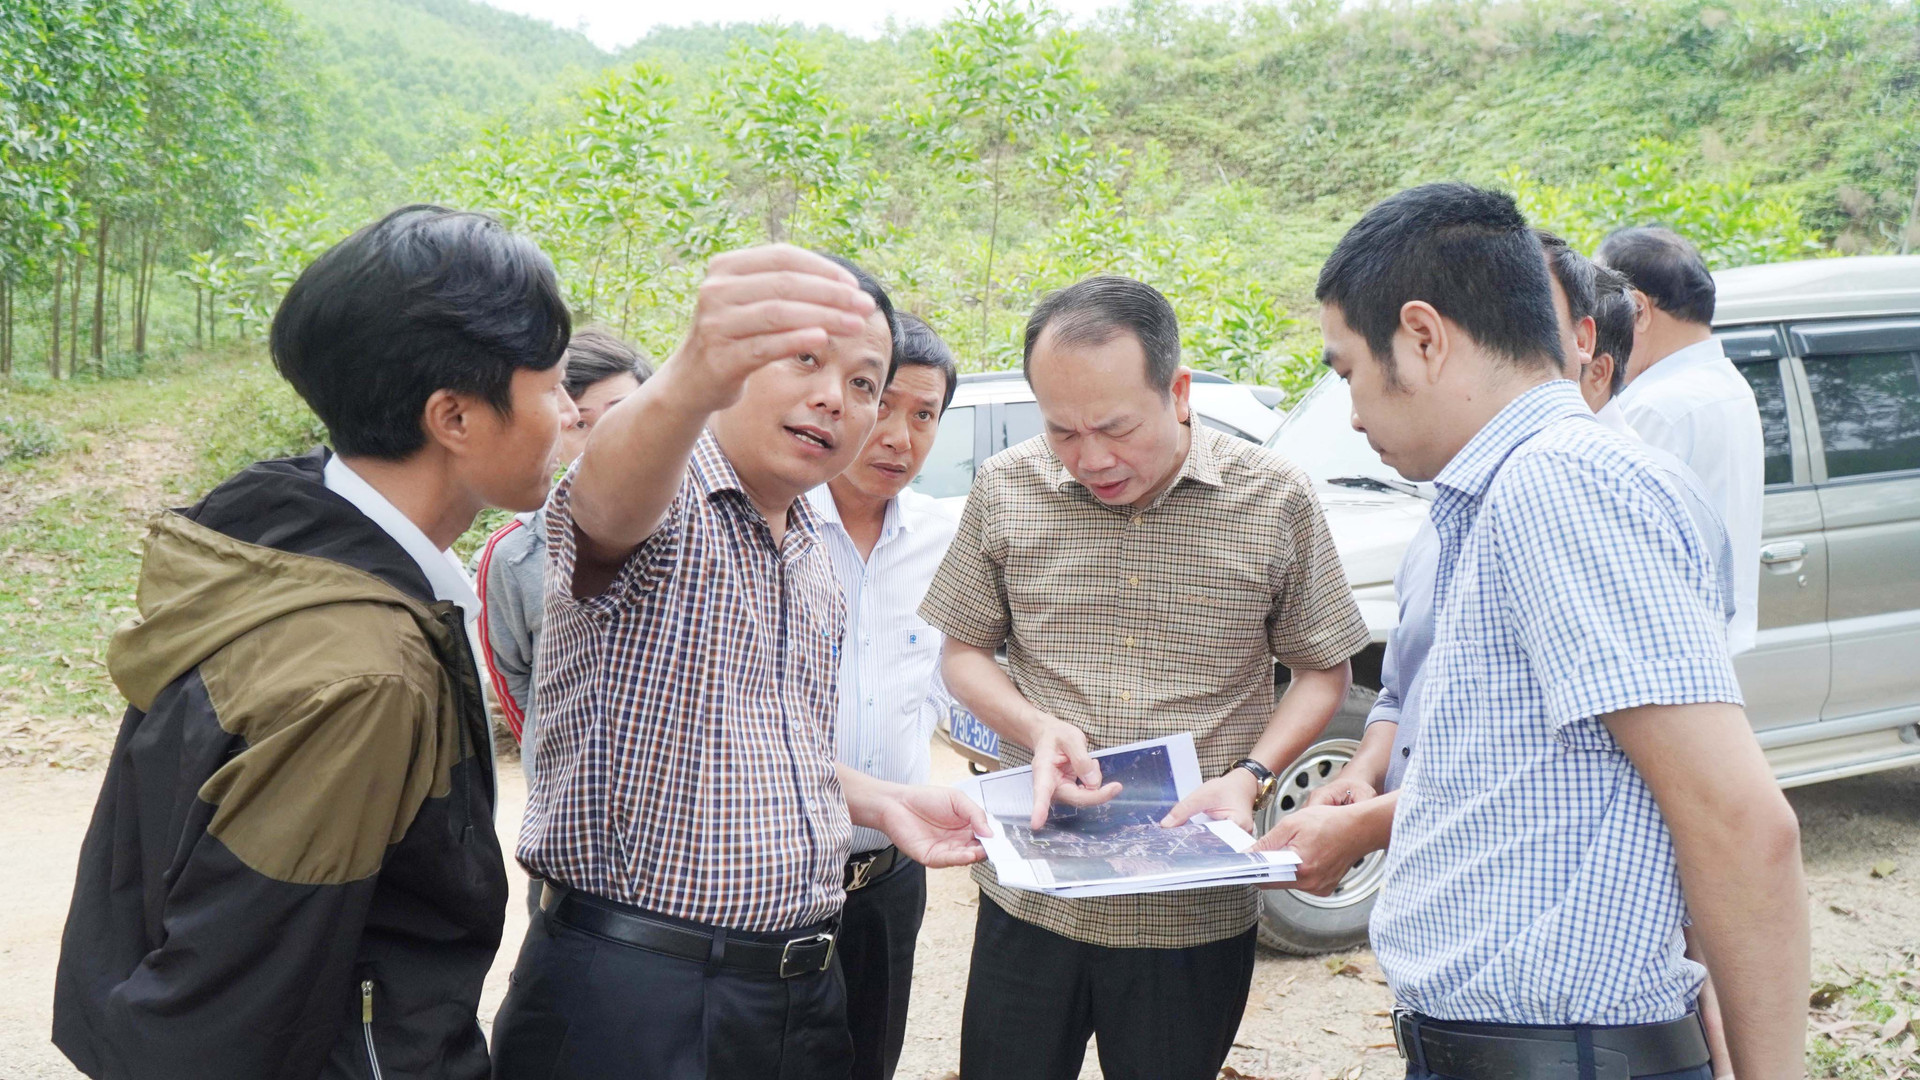 Thừa Thiên – Huế: Xóa bỏ các bến bãi tập kết khoáng sản trái phép